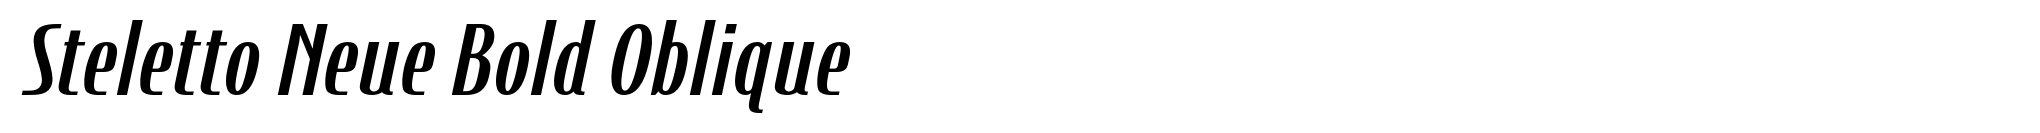 Steletto Neue Bold Oblique image